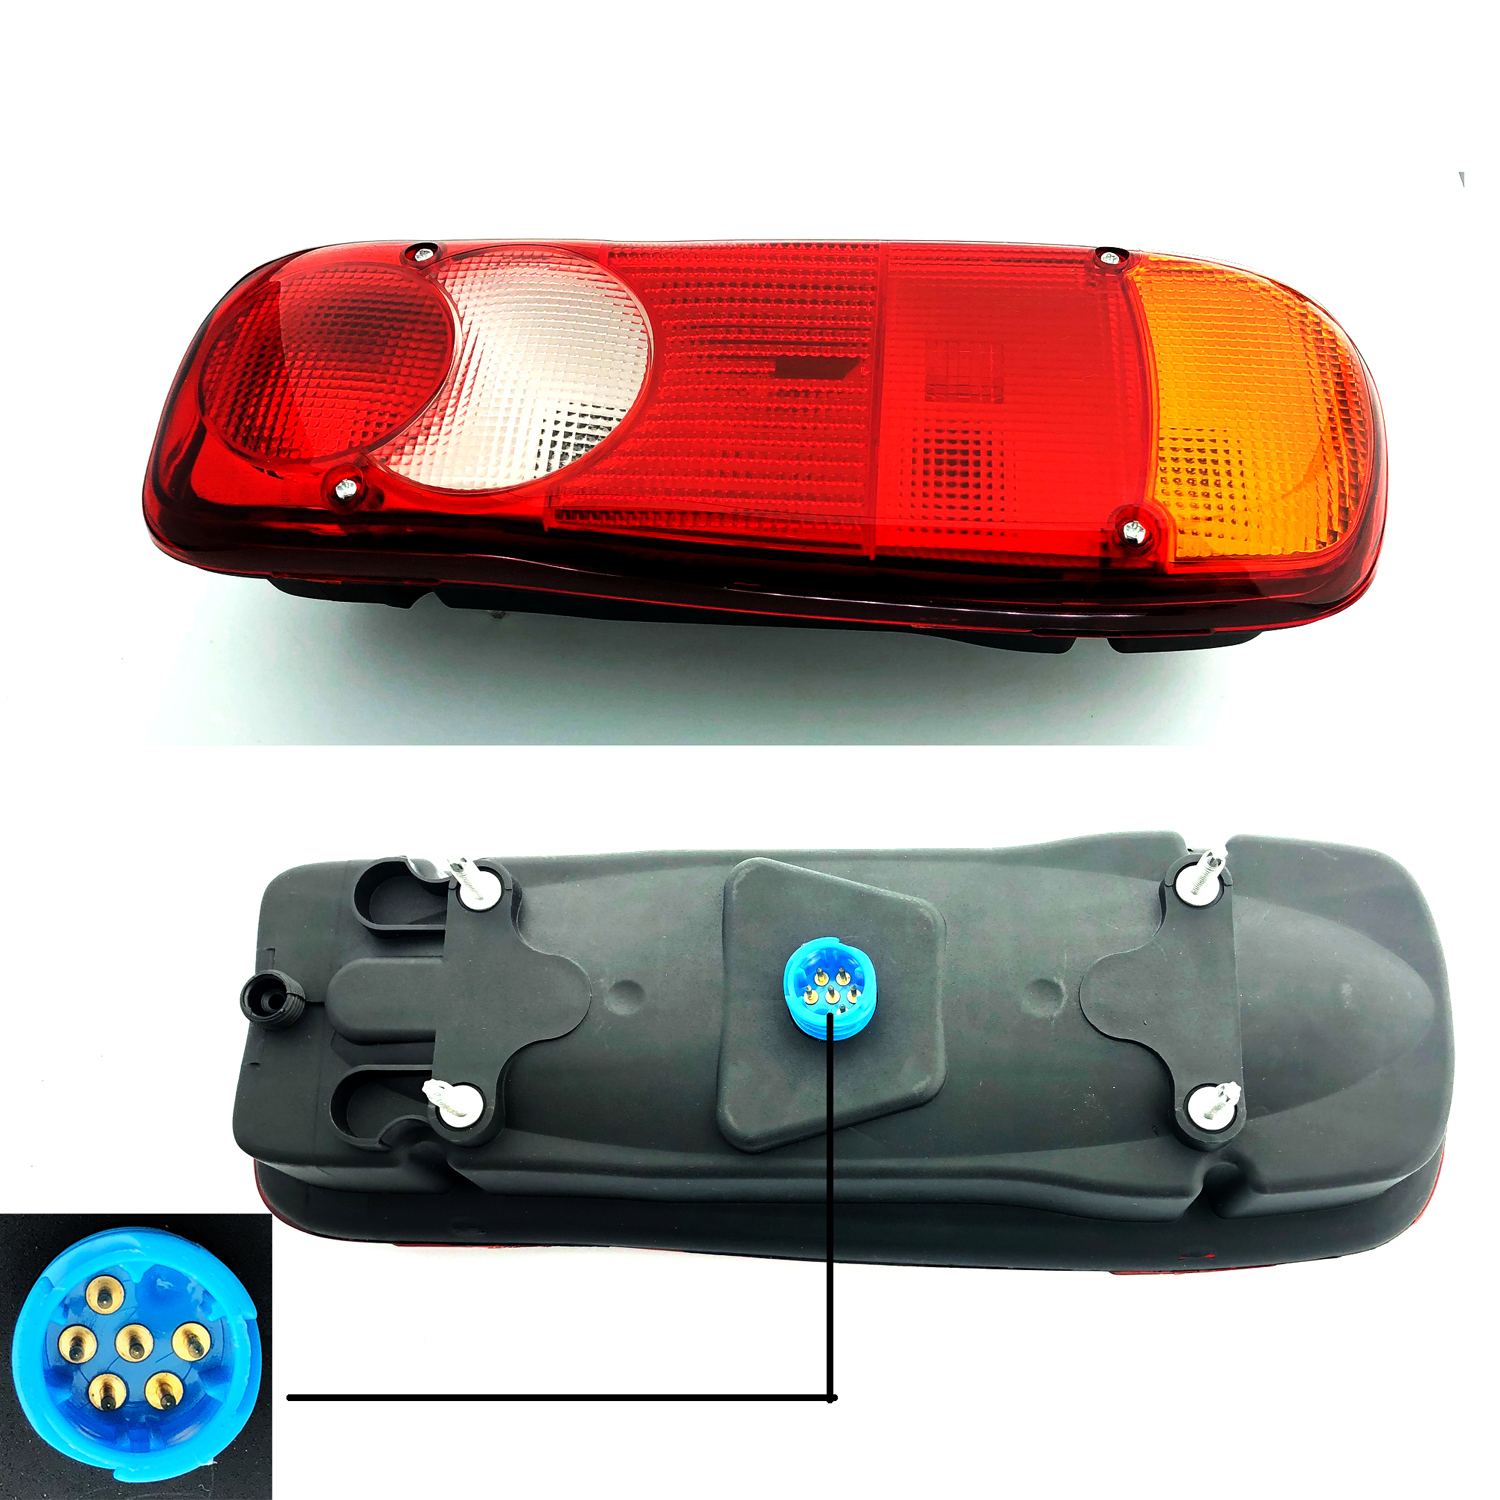 Citroen Relay Chasis Cab ( Lamp Lights ) VAN REAR LAMP LIGHT LEFT HAND ( UK Passenger Side ) 2012 to 2021 – VAN REAR LAMP LIGHT